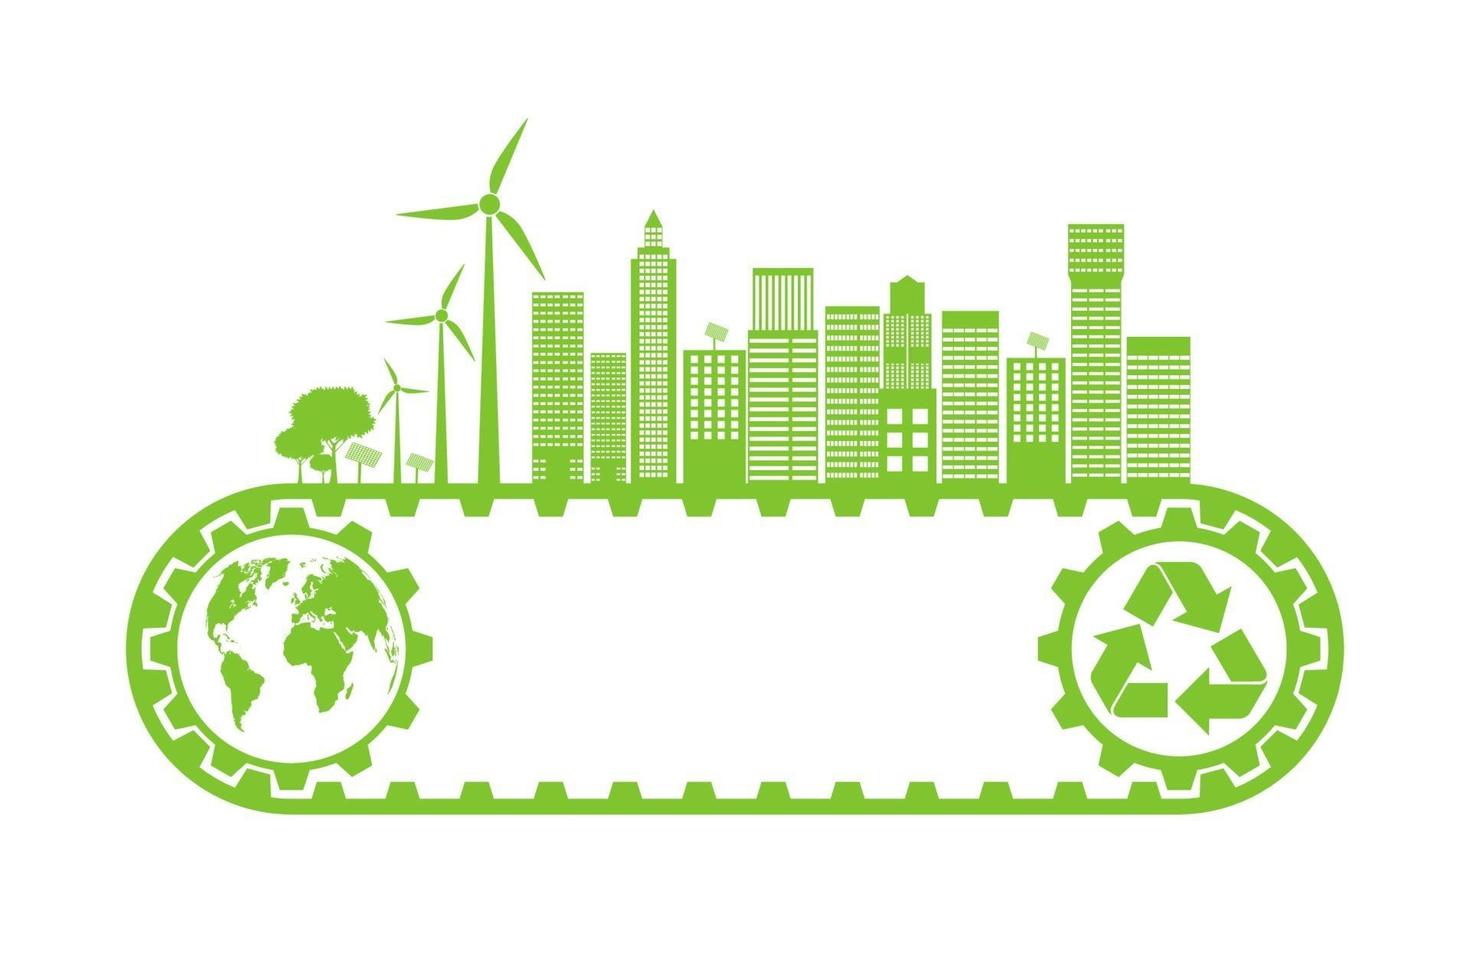 Grüne Städte helfen der Welt mit umweltfreundlichen Konzeptideen vektor